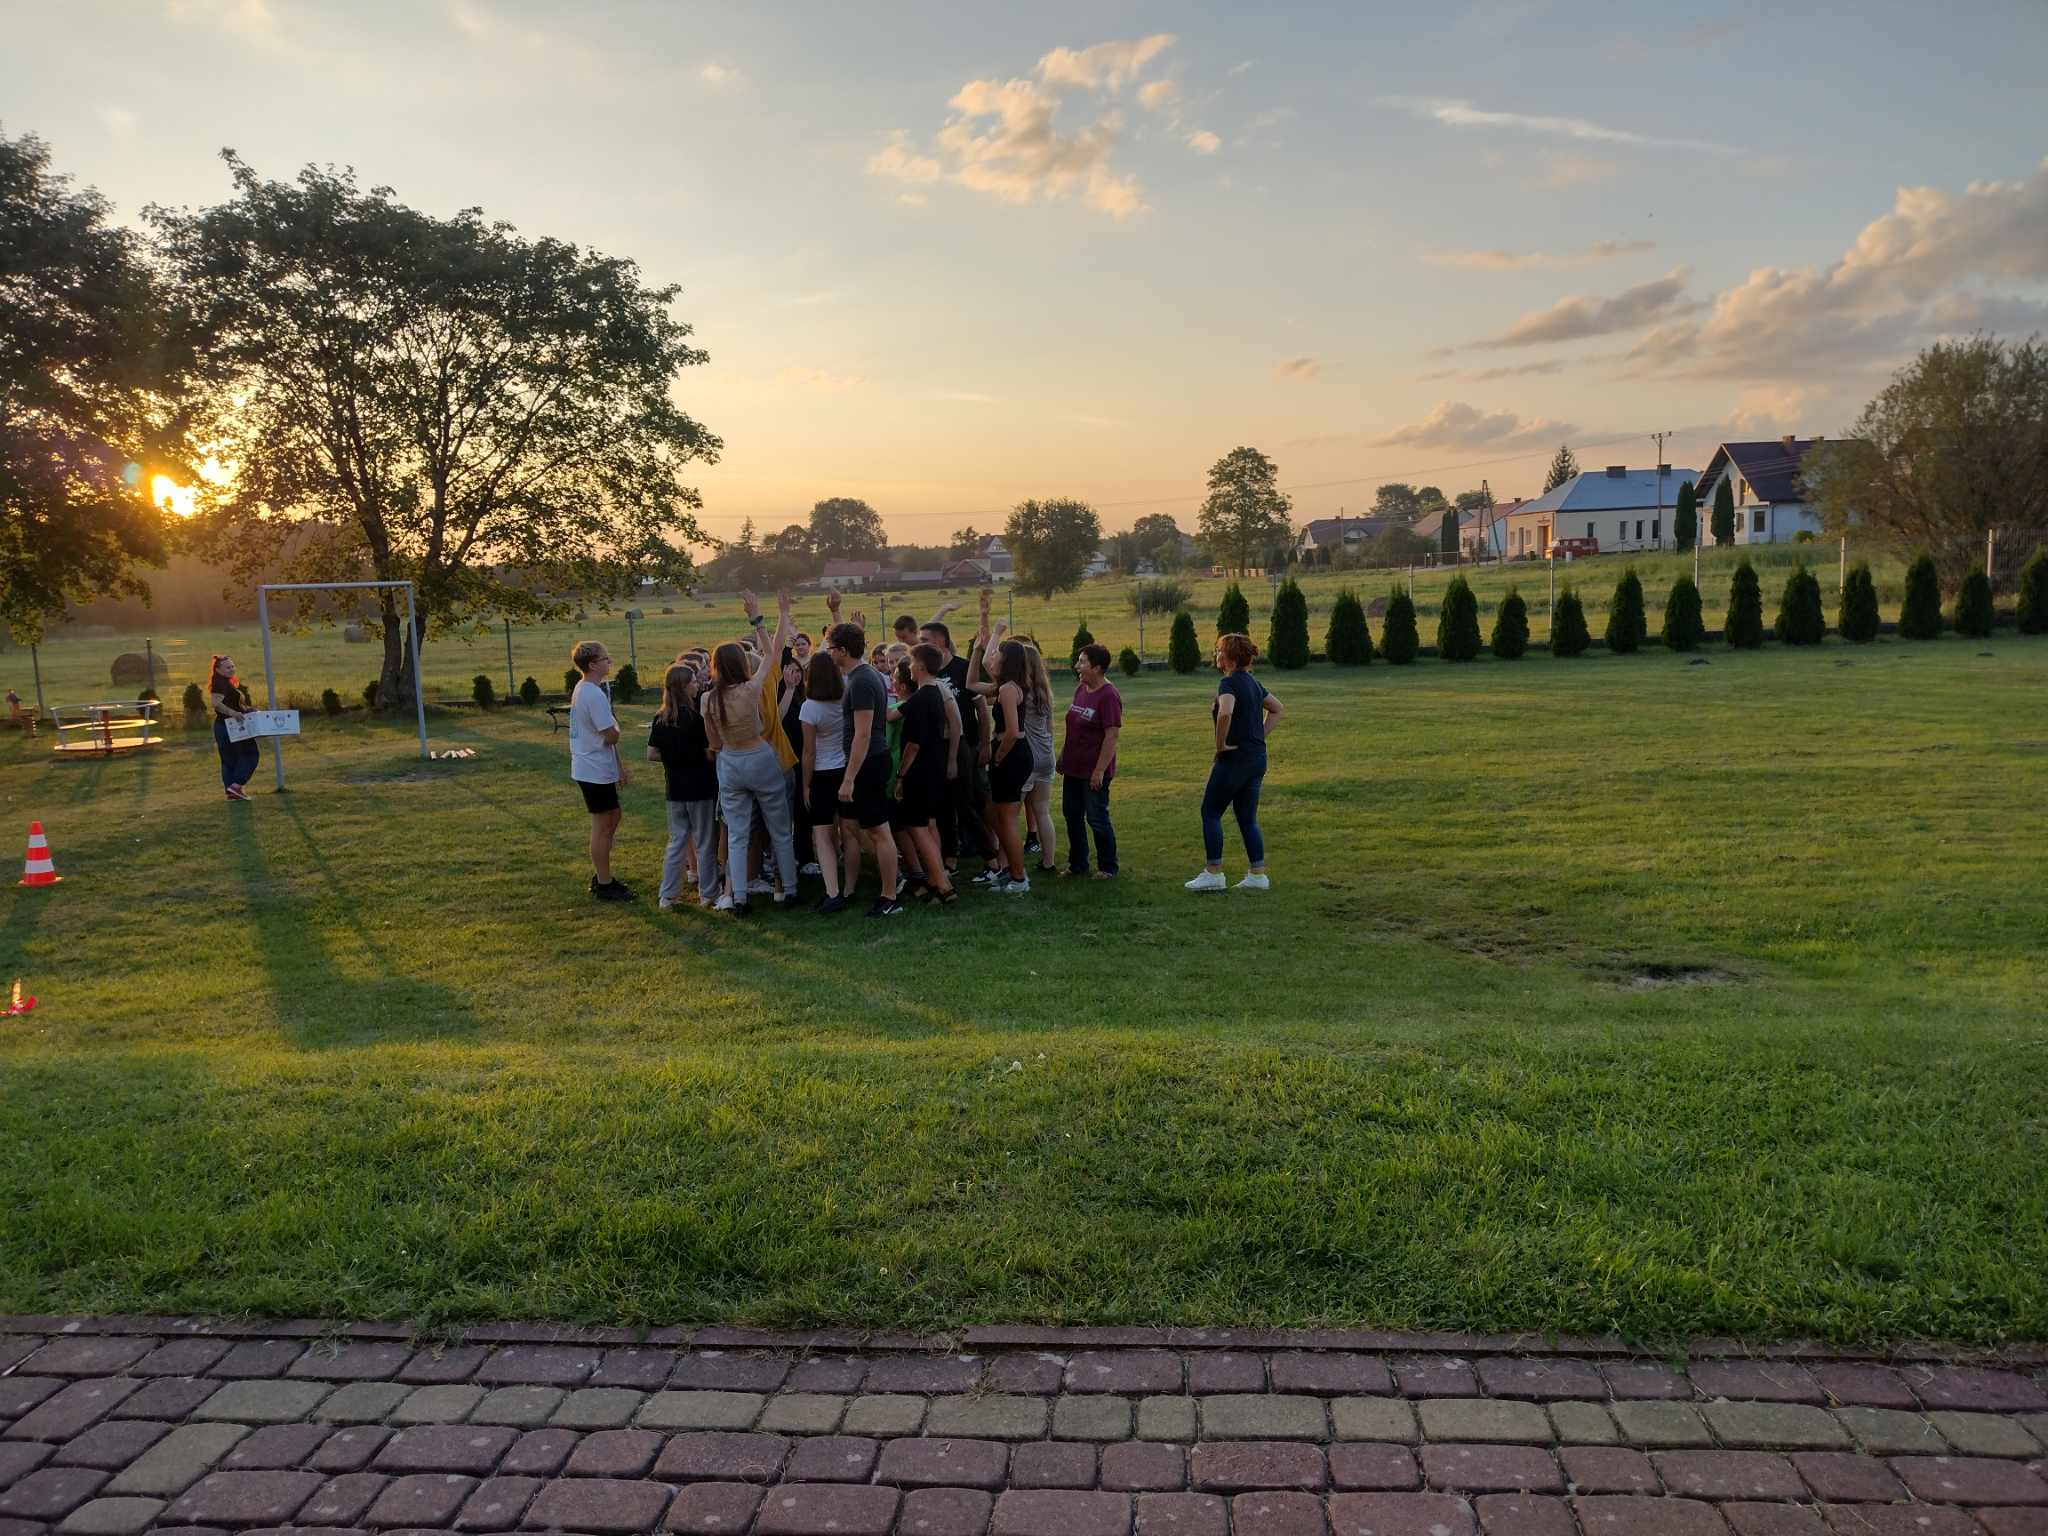 Warsztaty profilaktyczne | Grupa młodzieży stoi blisko siebie na trawiastym boisku, część trzyma ręce podniesione w górę. Wszyscy są zwróceni twarzami do siebie. W tle zachodzące słońce..jpeg